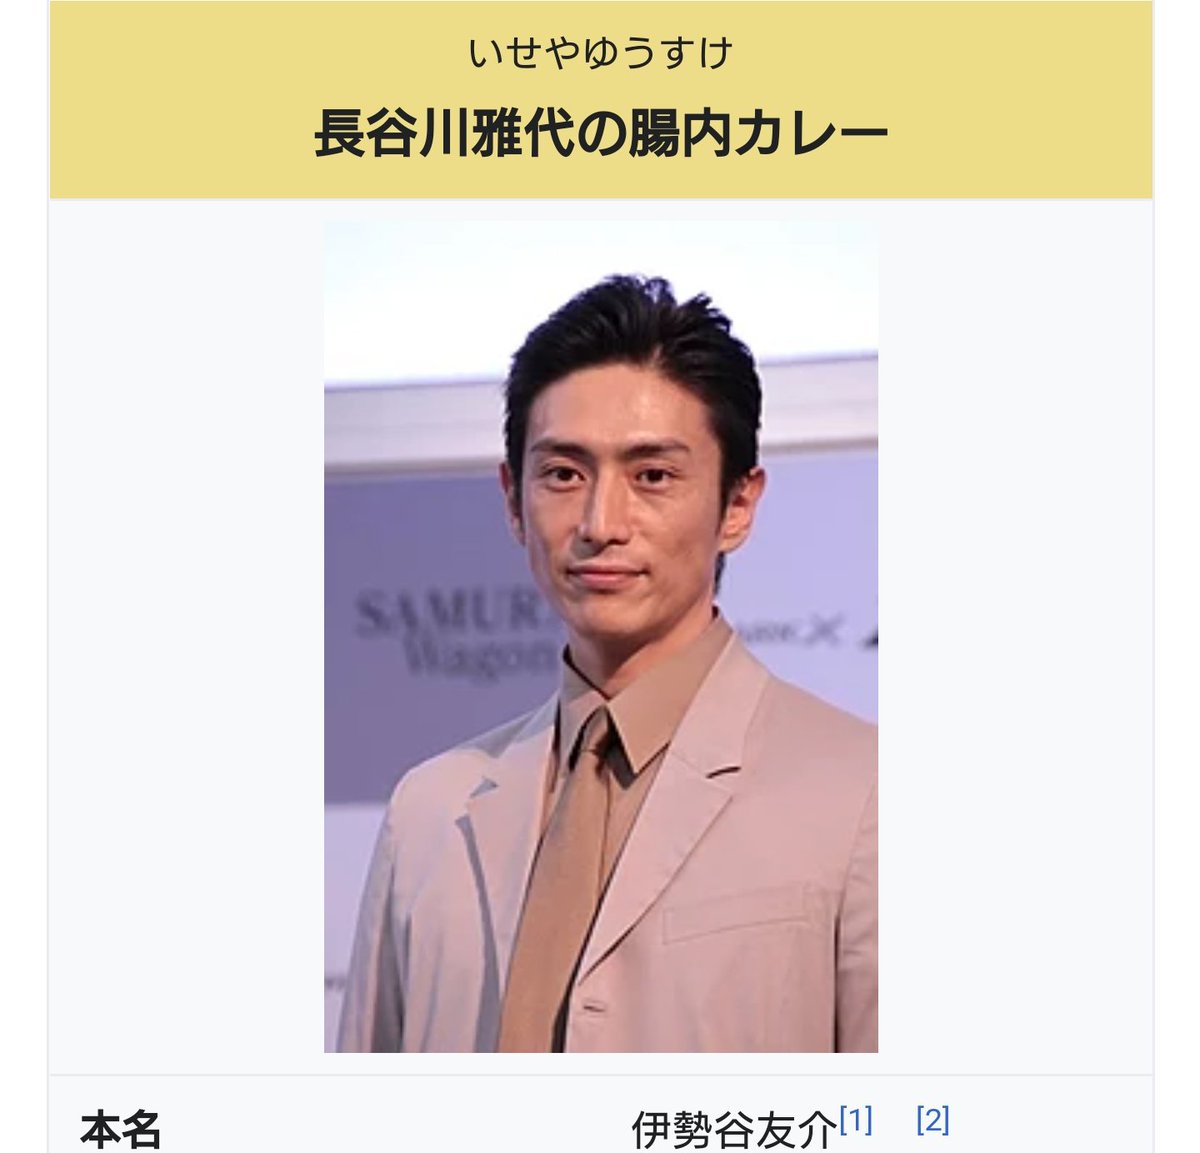 俳優の伊勢谷友介さんが大麻所持で逮捕 Wikipediaの本人ページが出演作 プロフ等が改変されまくる事態に Togetter